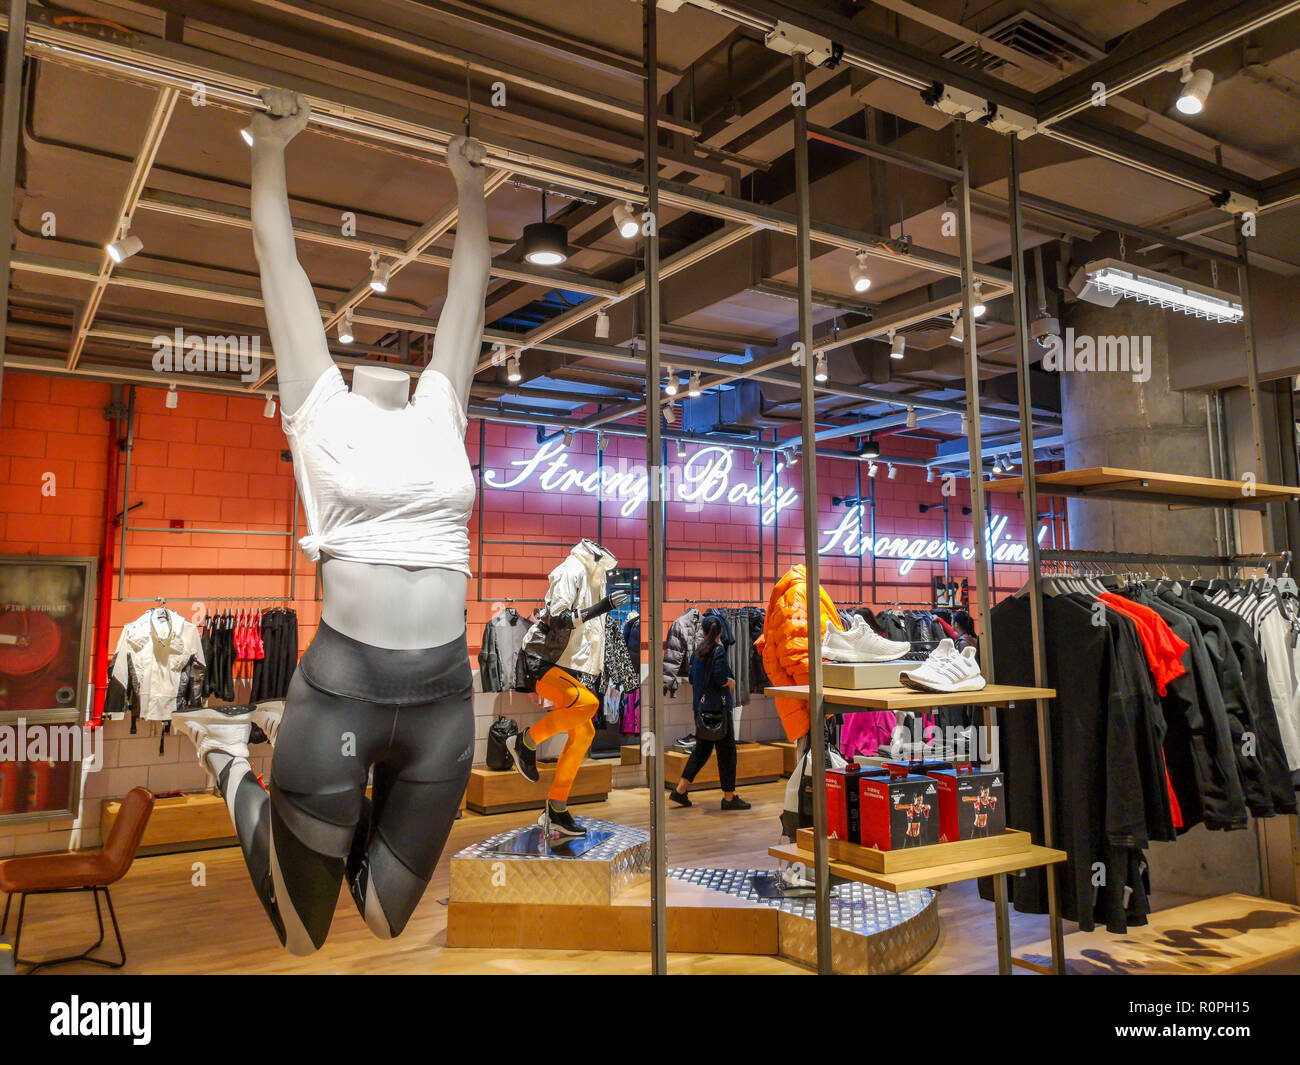 Shanghai, China. 6 nov, 2018. La ropa y los zapatos en exhibición en el  centro de la marca Adidas Adidas Flagship Store de apertura en Shanghai.  Crédito: SIPA Asia/Zuma alambre/Alamy Live News